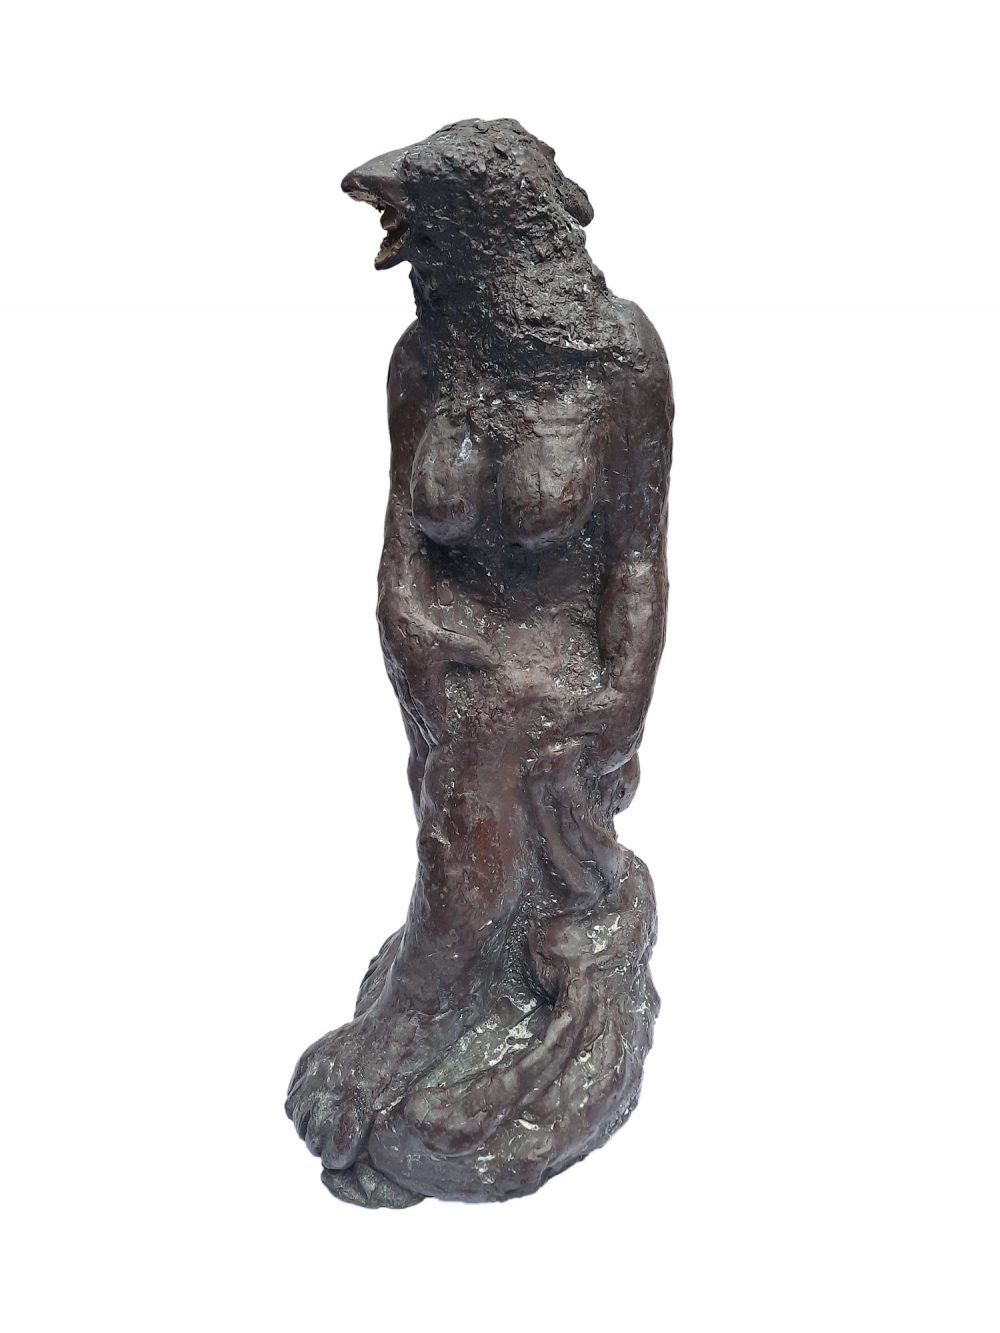 aat veldhoen brons beeld